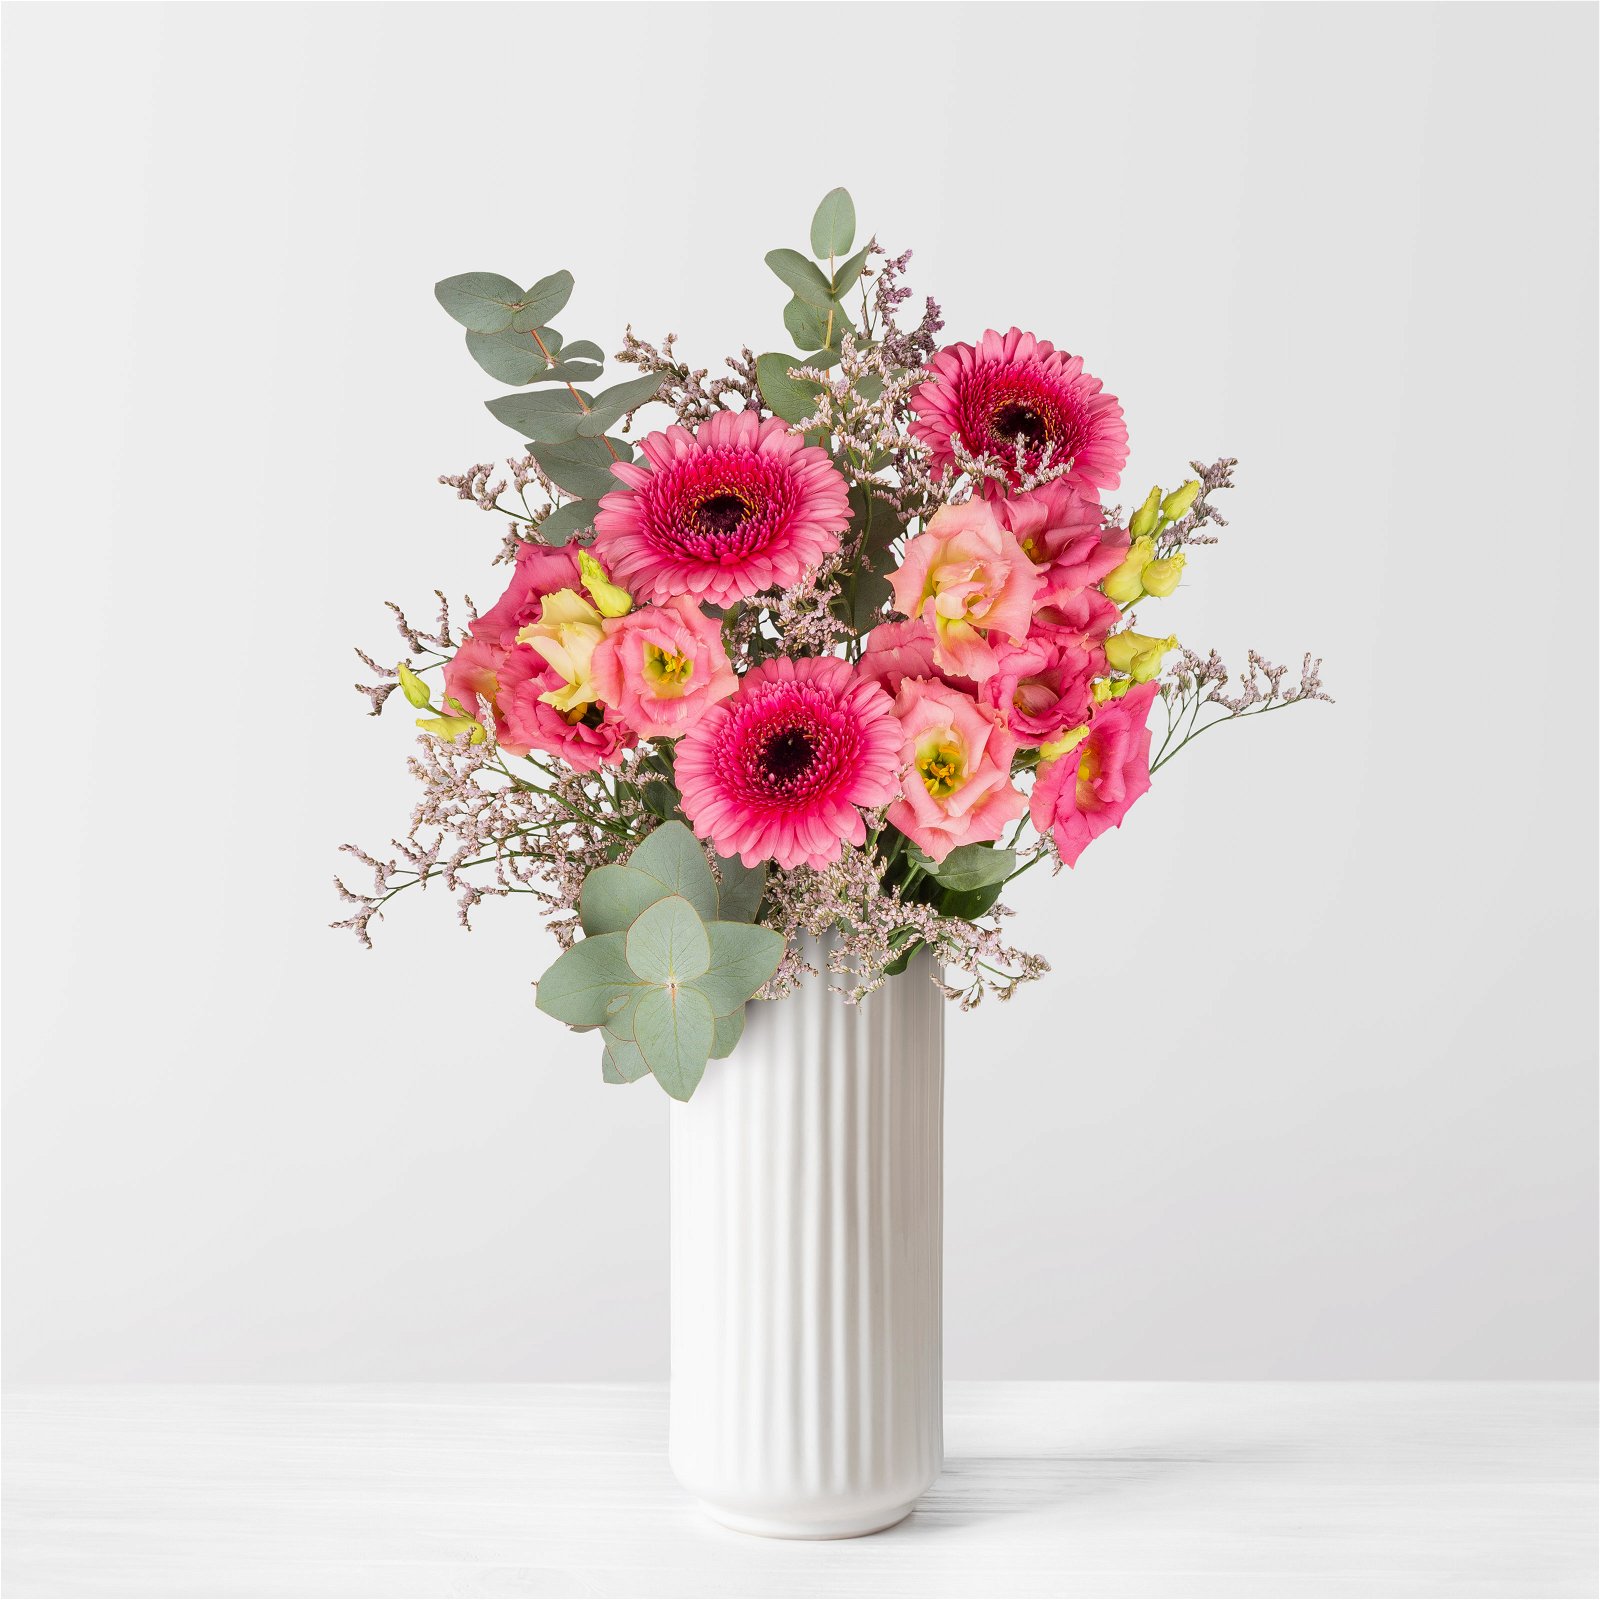 Gemischter Blumenbund 'Glücksmoment' inkl. gratis Grußkarte